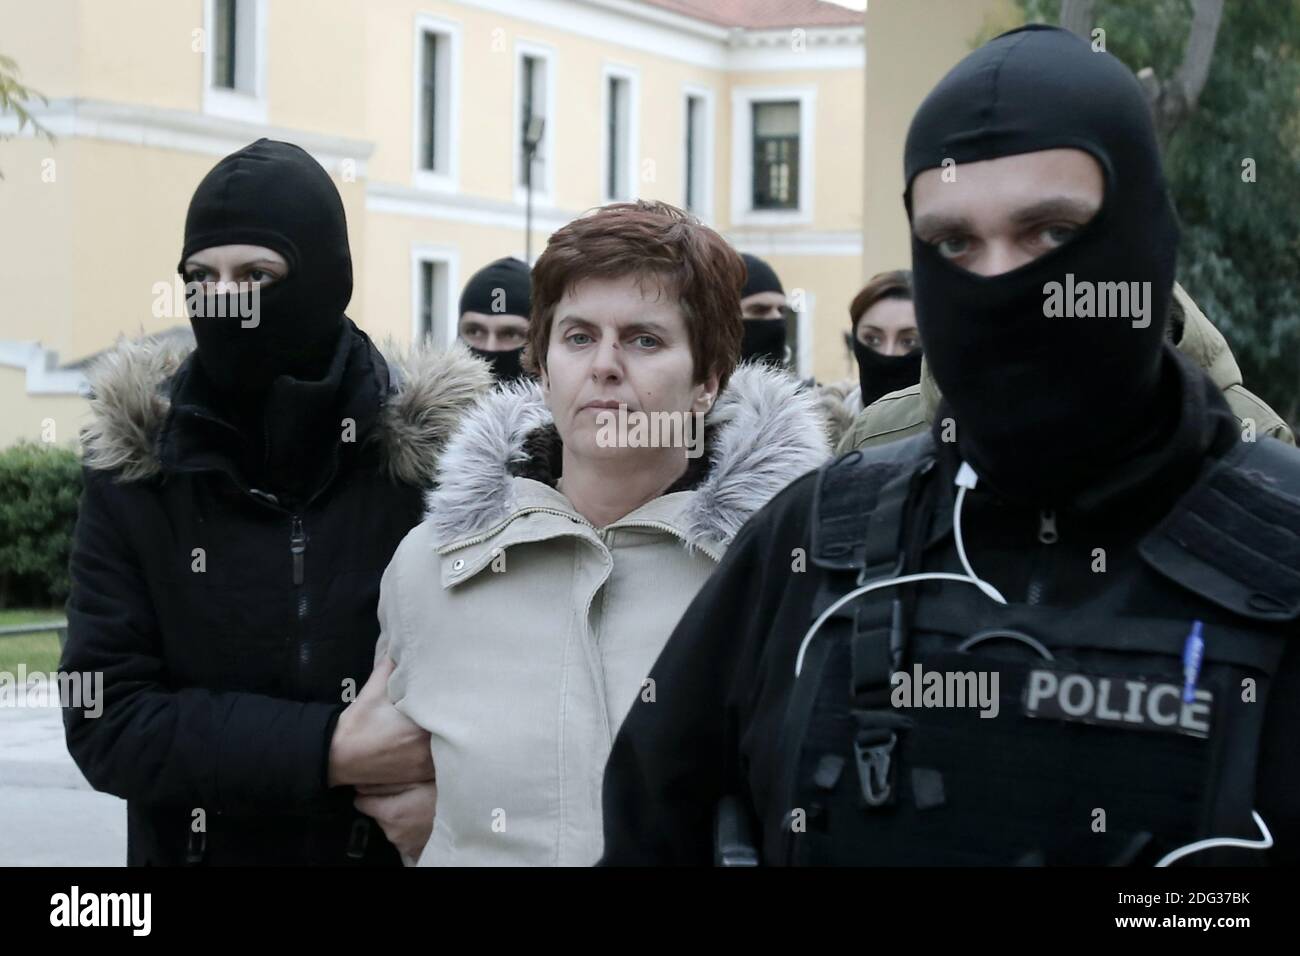 Paula Roupa (C) wird am Freitag, den 6. Januar 2017, von Anti-Terror-Polizisten begleitet, die aus den Büros der Staatsanwälte in einem Gericht in Athen kommen. Die 48-jährige Frau, Mitglied der Terrorgruppe Revolutionary Struggle, wurde am Donnerstag, dem 5. Januar, verhaftet und steht seit über zwei Jahren auf der Fahndungsliste der Hellenischen Polizei. Foto von Panayotis Tzamaros/ABACAPRESS.COM 06/01/2017-ATHEN Stockfoto